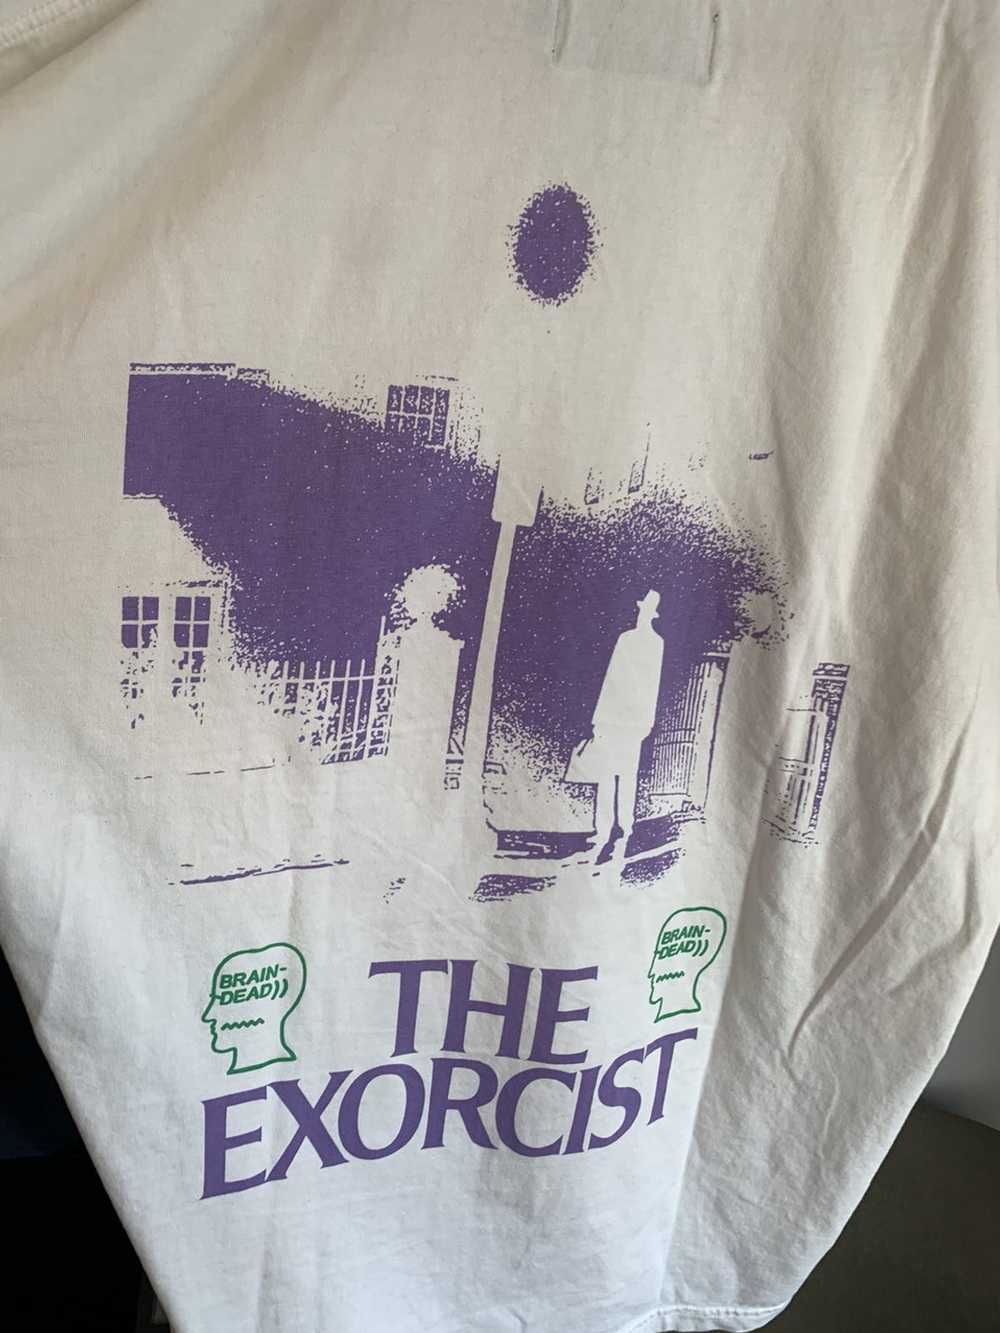 Brain Dead Braindead “The Exorcist” T-Shirt - image 2